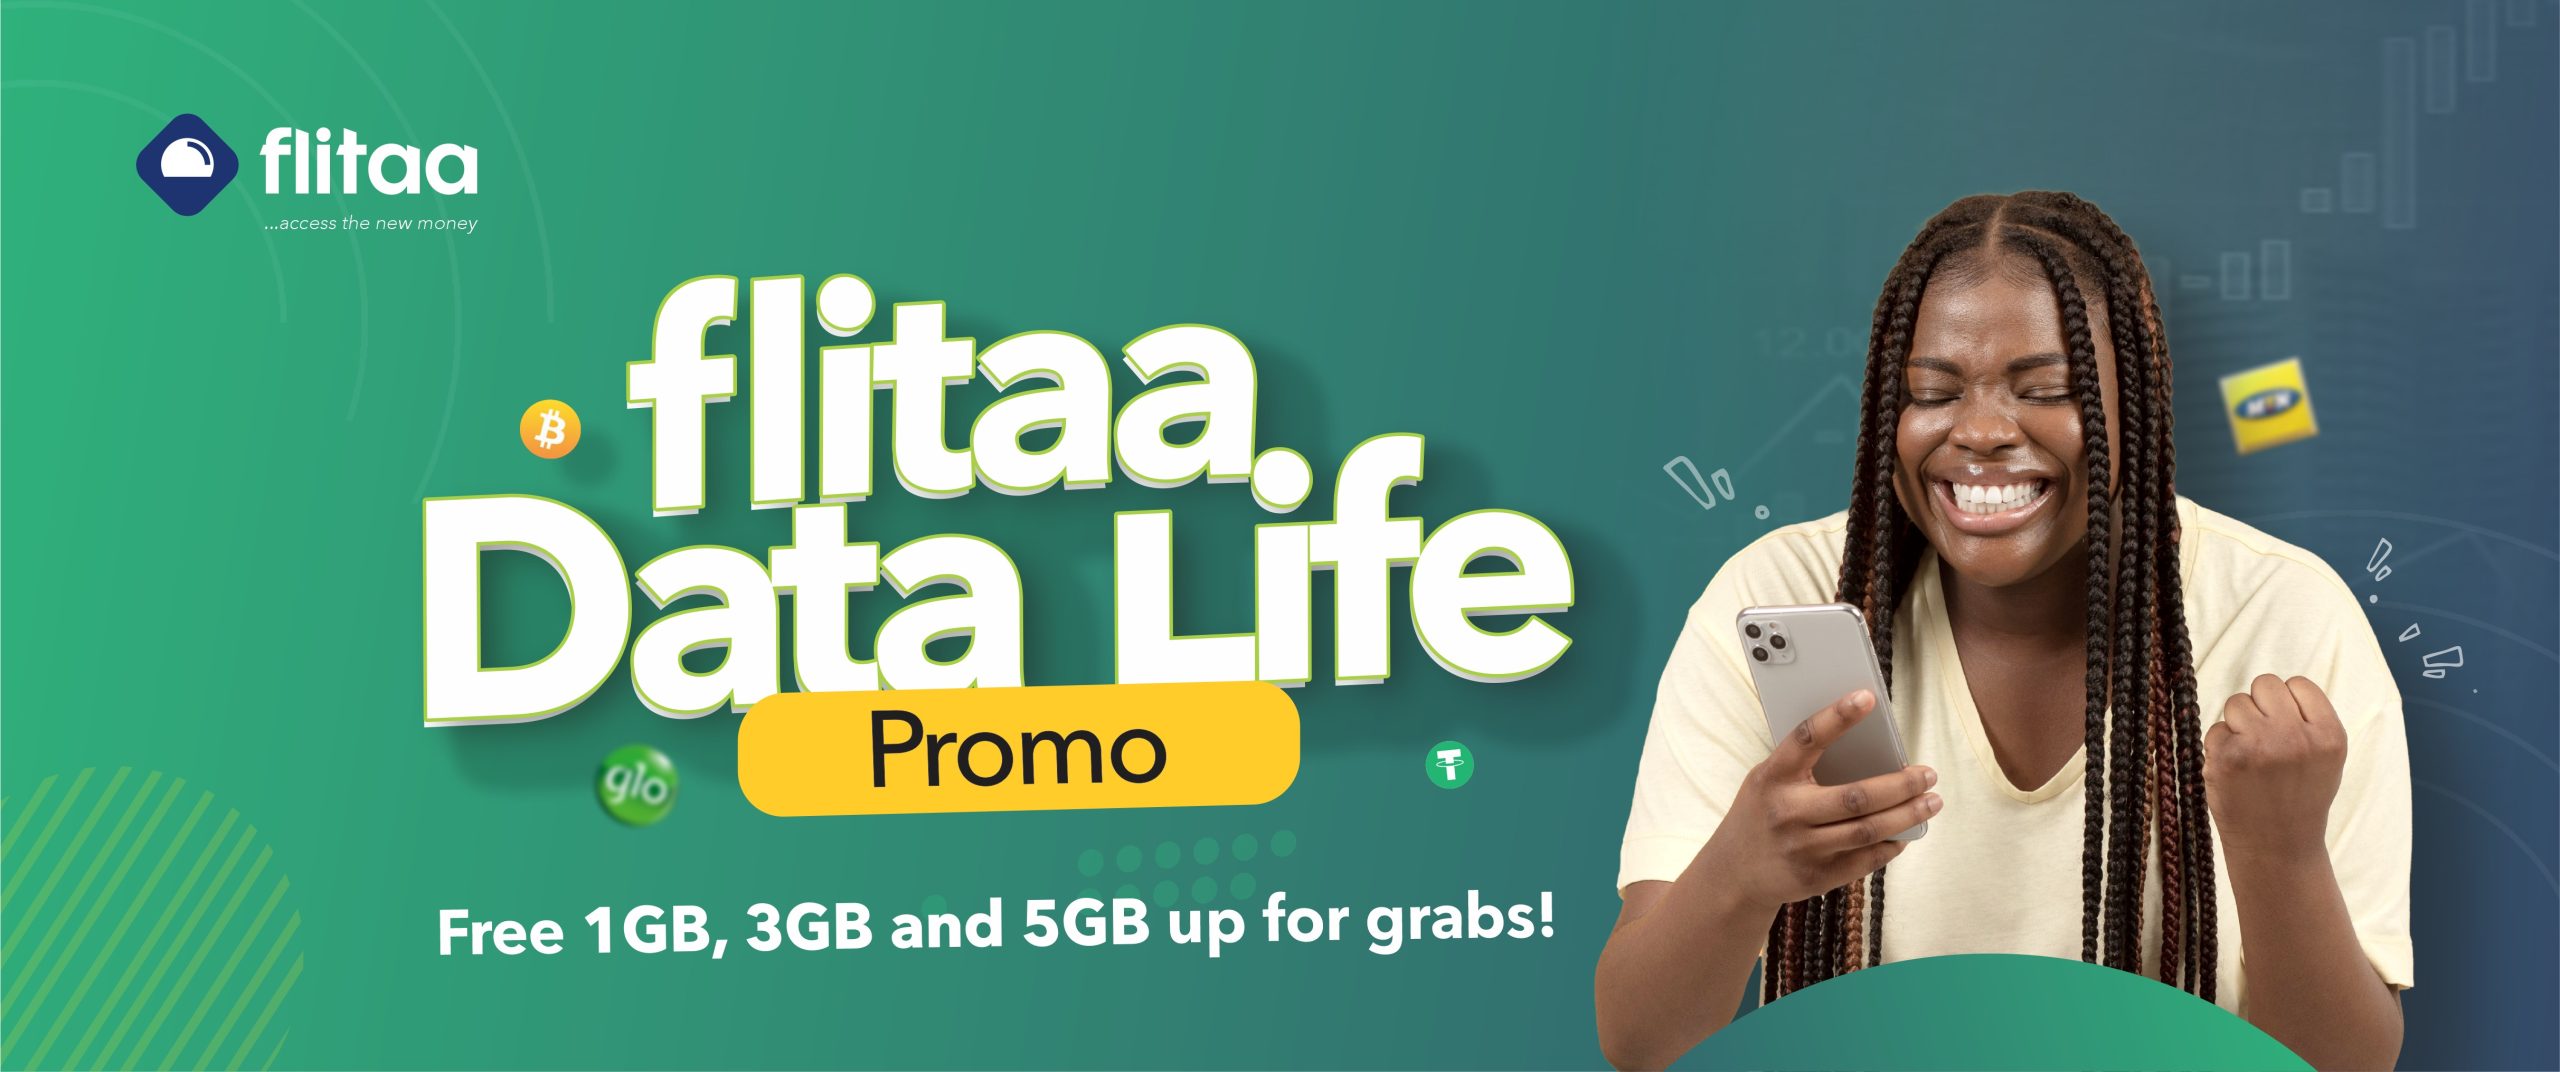 flitaa data life promo